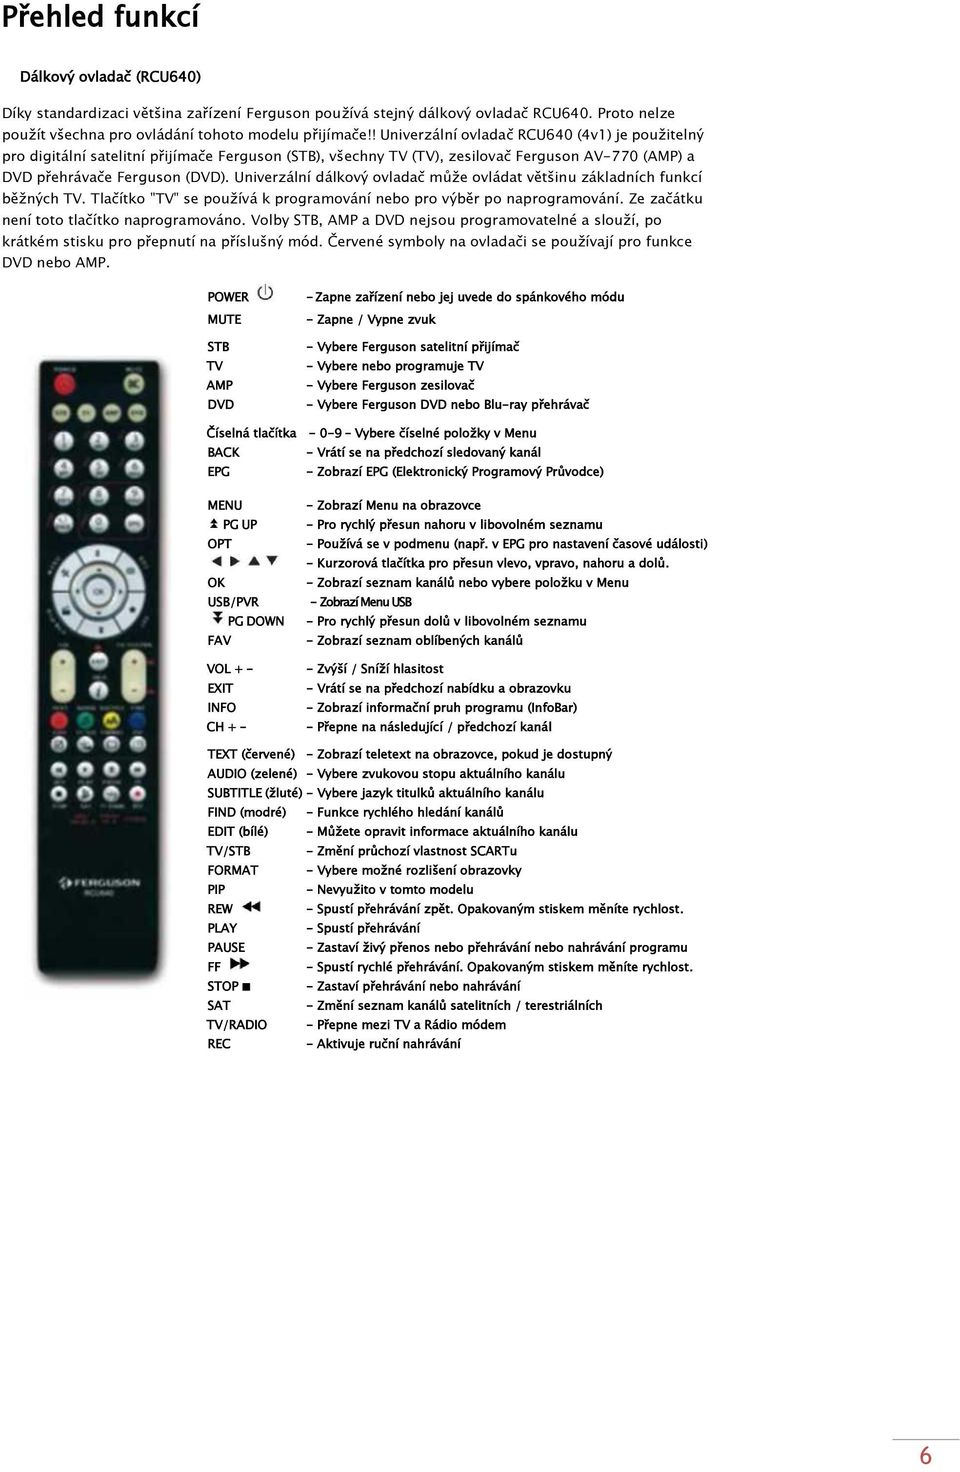 Univerzální dálkový ovladač můţe ovládat většinu základních funkcí běţných TV. Tlačítko "TV" se pouţívá k programování nebo pro výběr po naprogramování. Ze začátku není toto tlačítko naprogramováno.